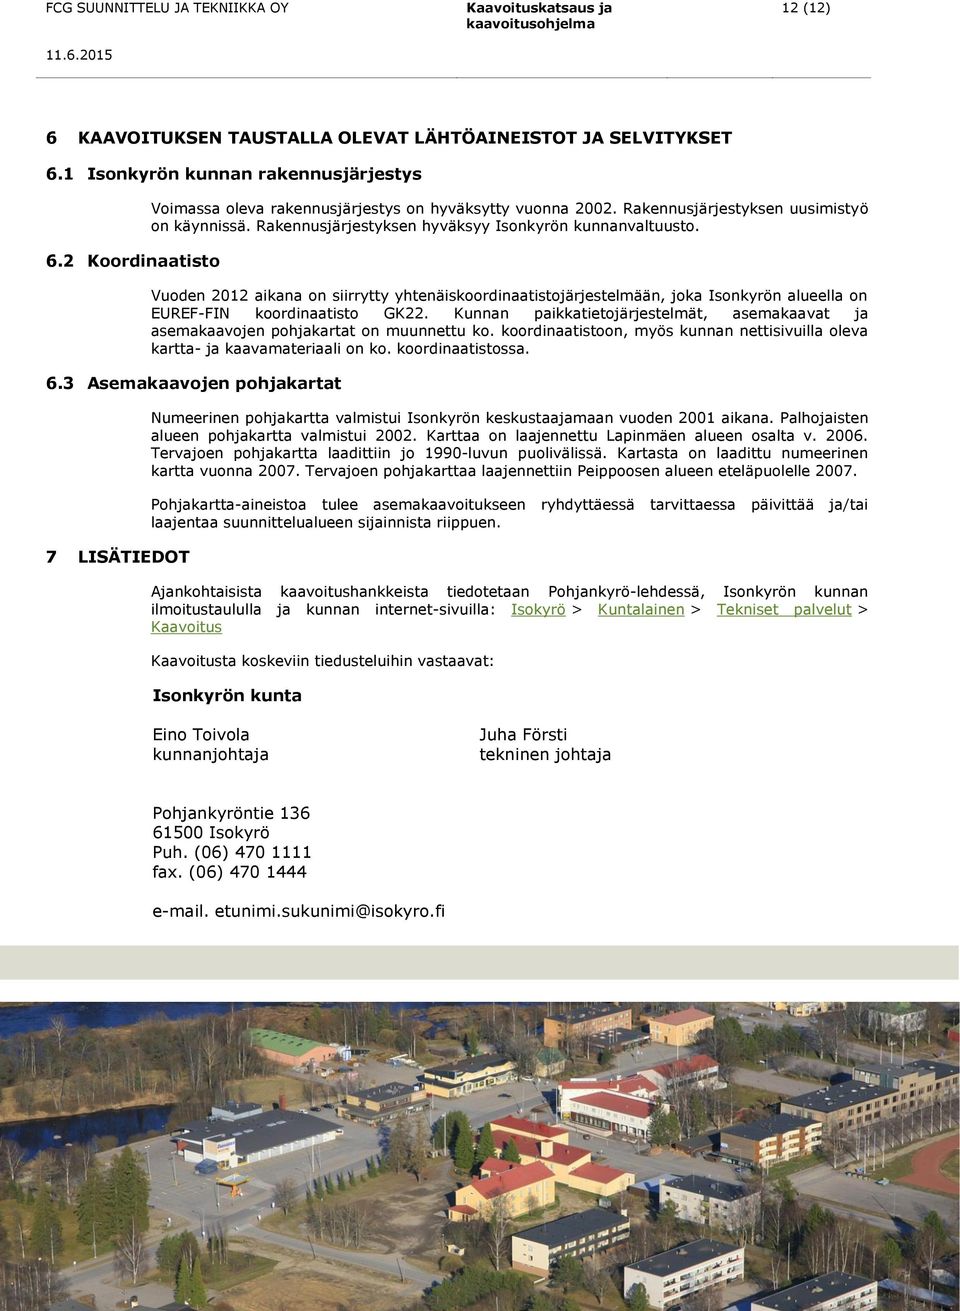 Vuoden 2012 aikana on siirrytty yhtenäiskoordinaatistojärjestelmään, joka Isonkyrön alueella on EUREF-FIN koordinaatisto GK22.